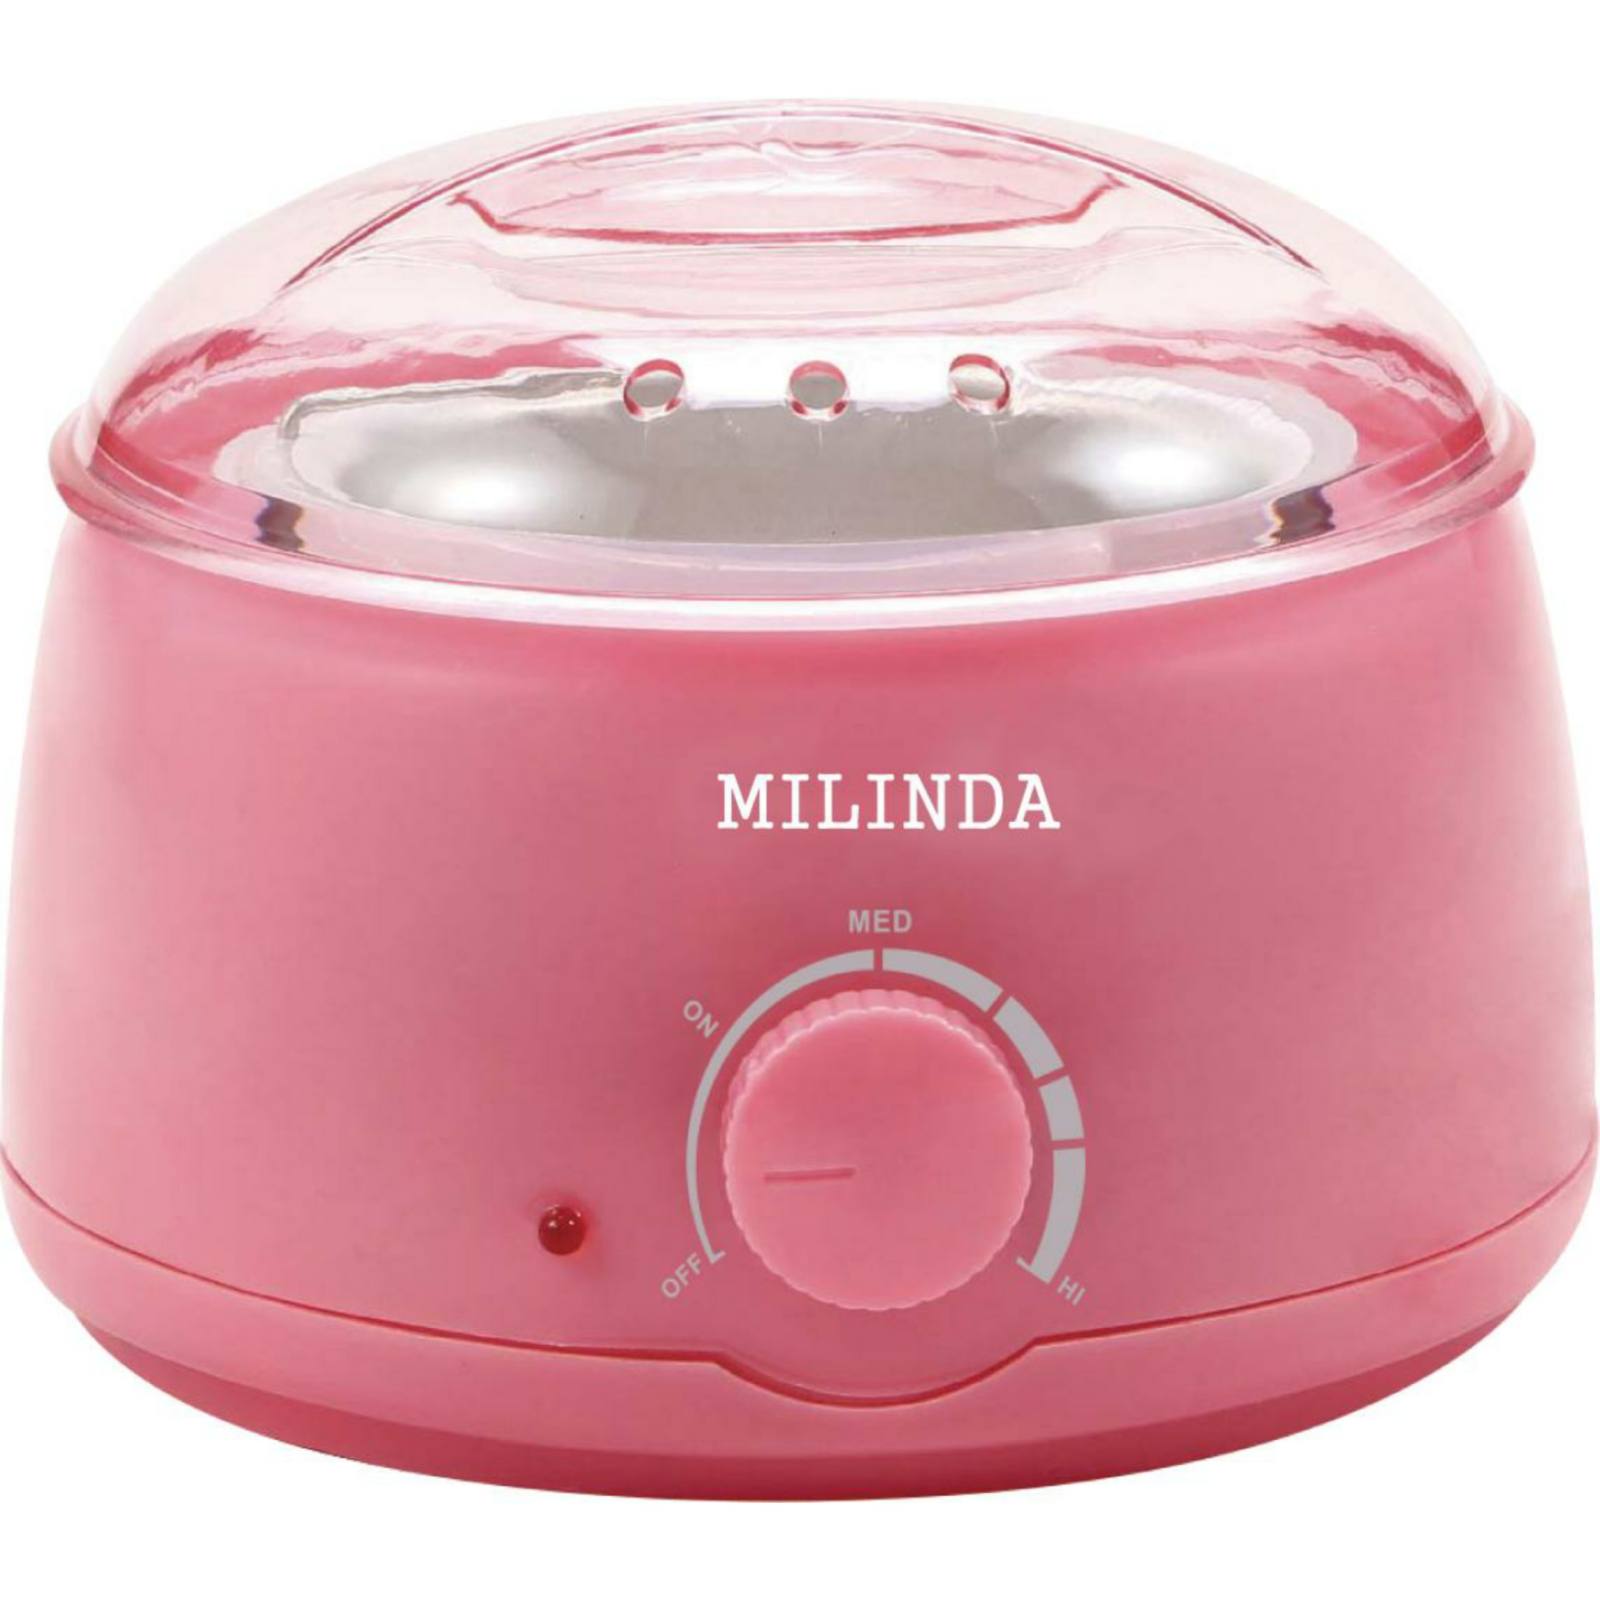 دستگاه شمع میلیندا(MILINDA)ذوب وکس میلیندا مدل 121